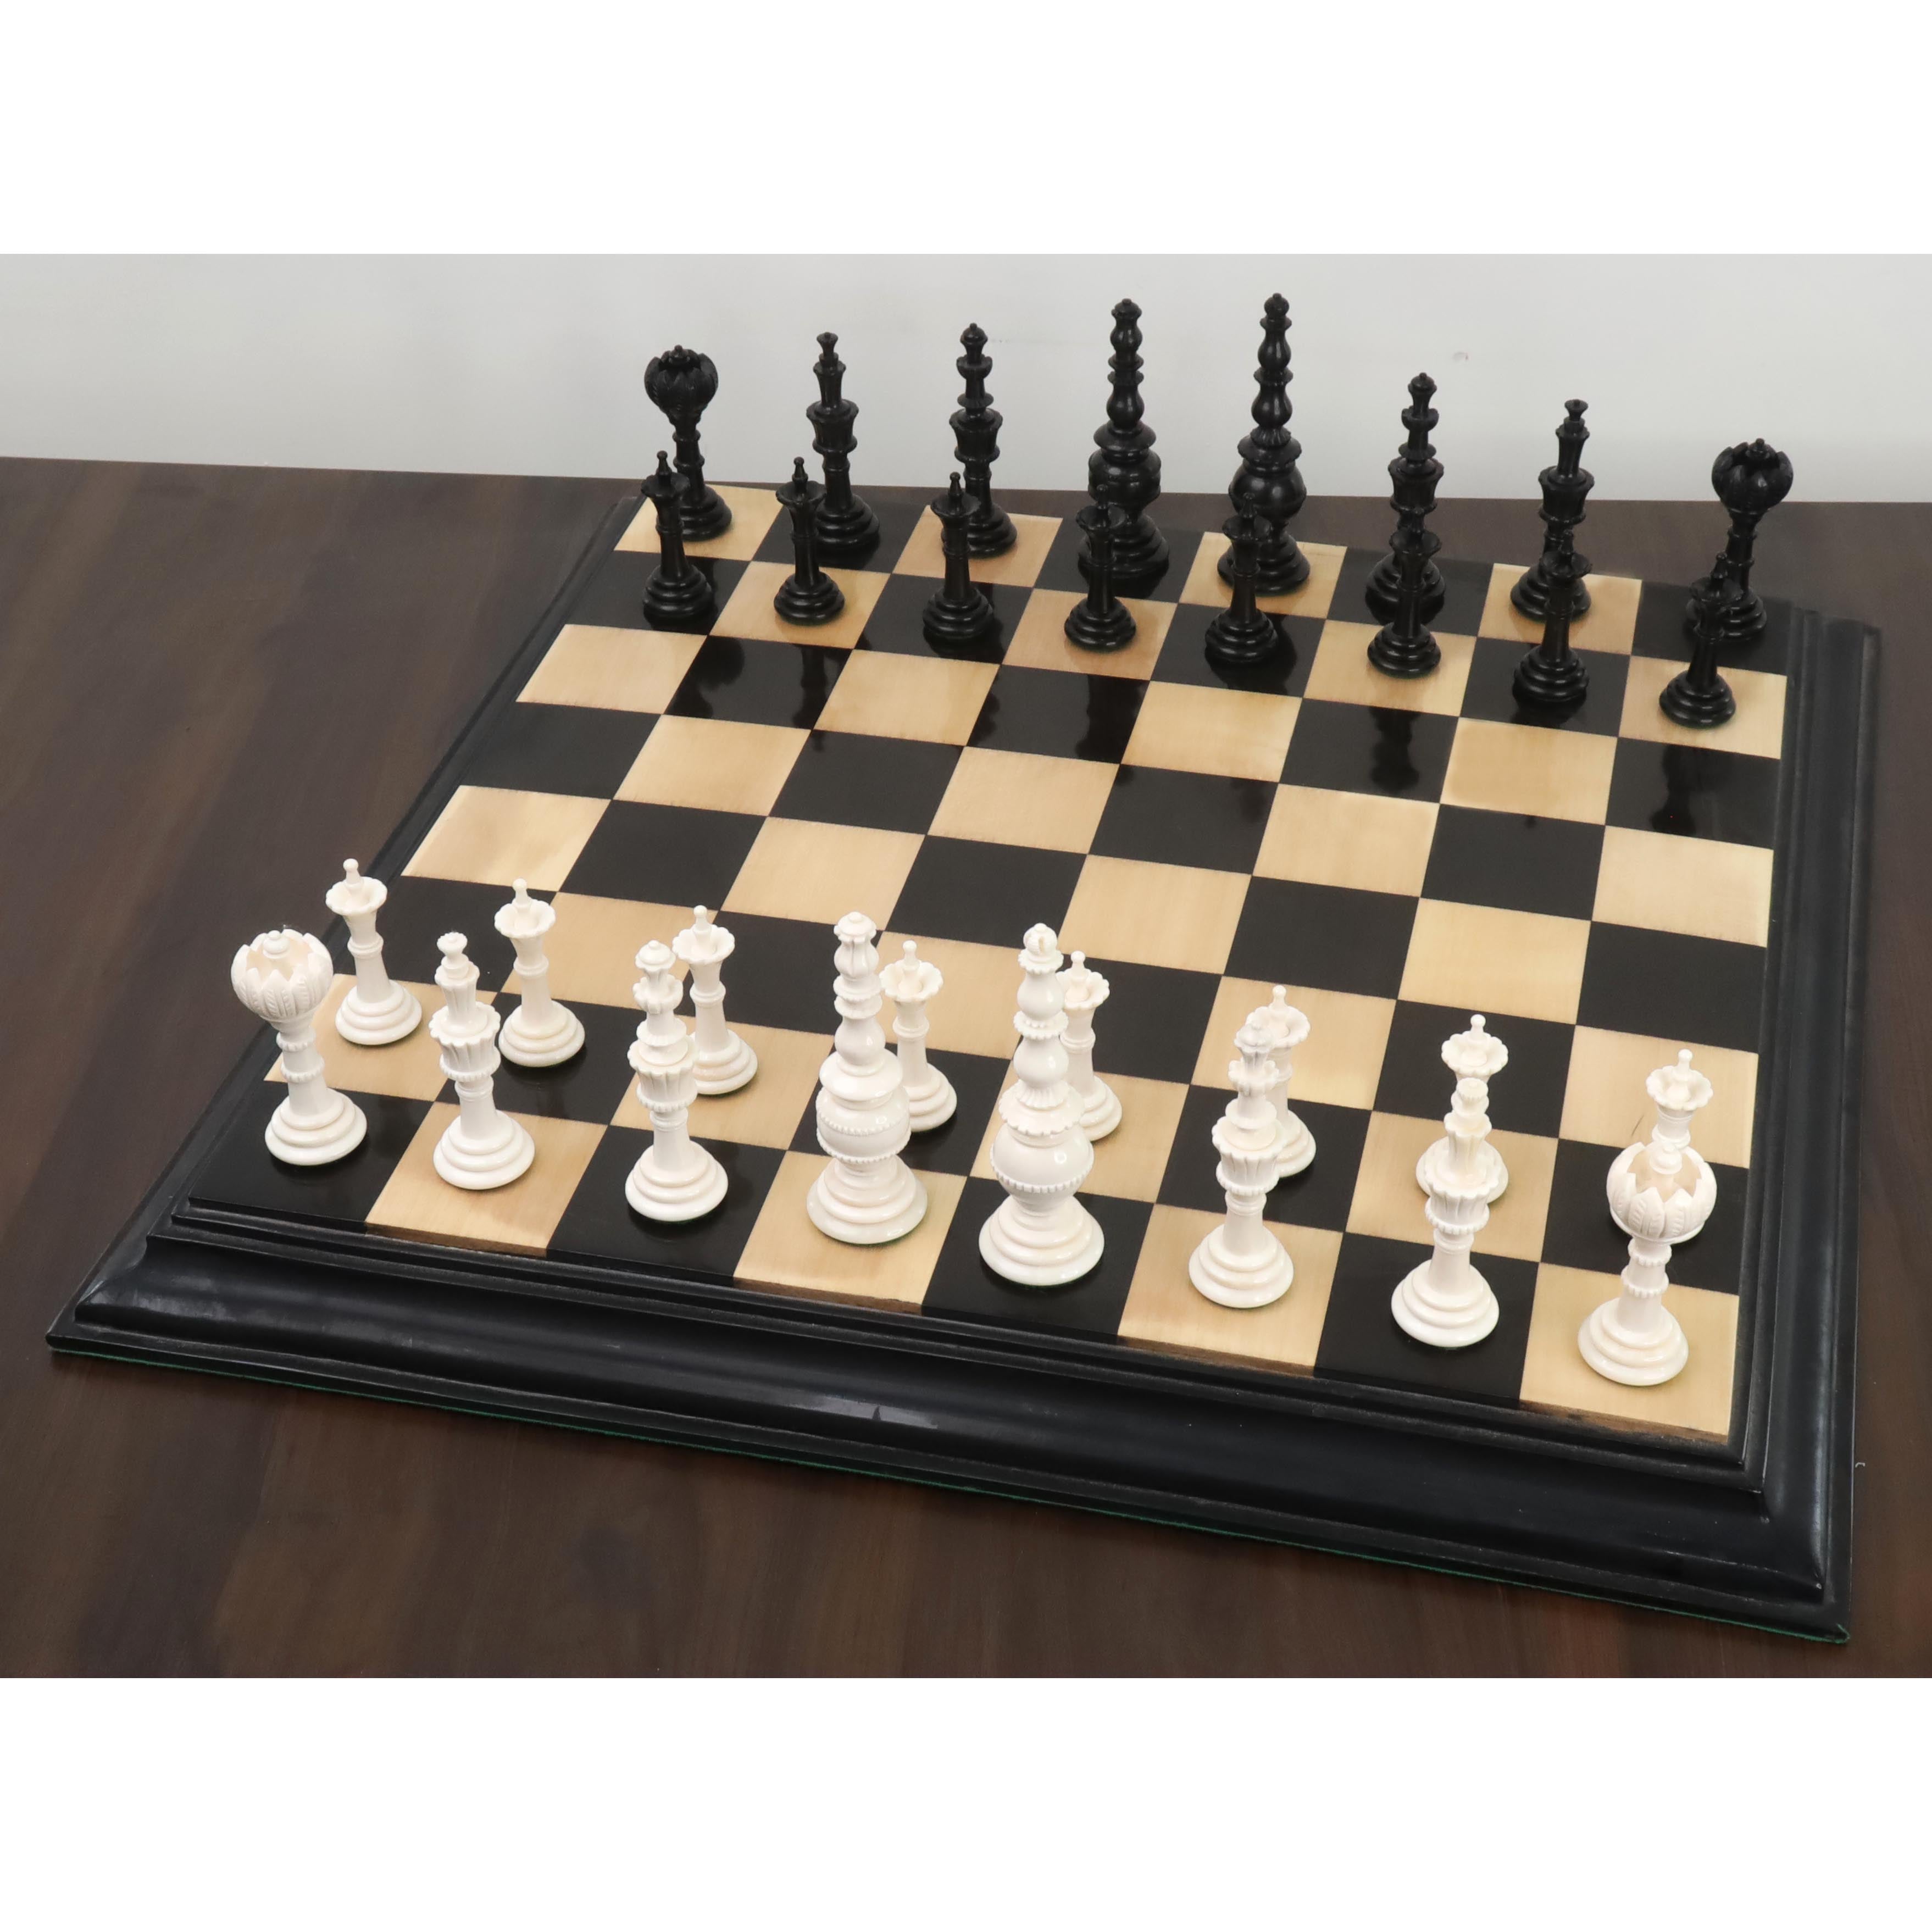 Cb games Wooden Chess Set Golden